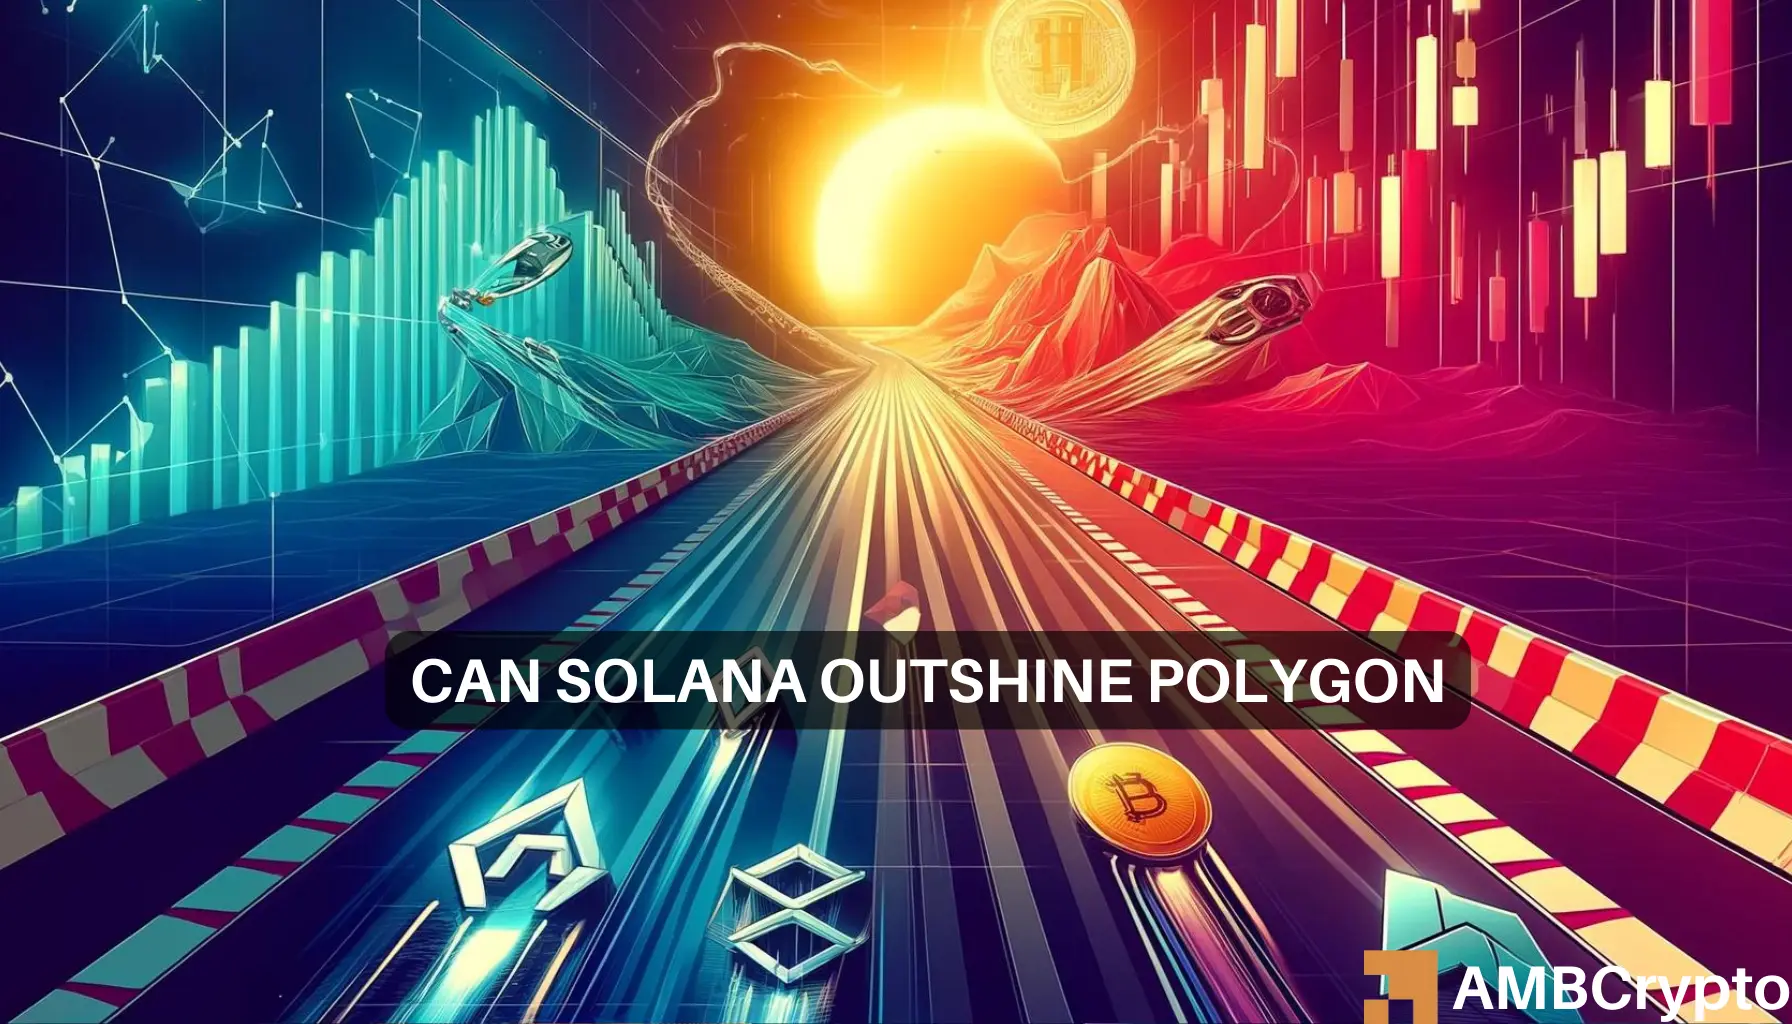 Polygon Solana Tron